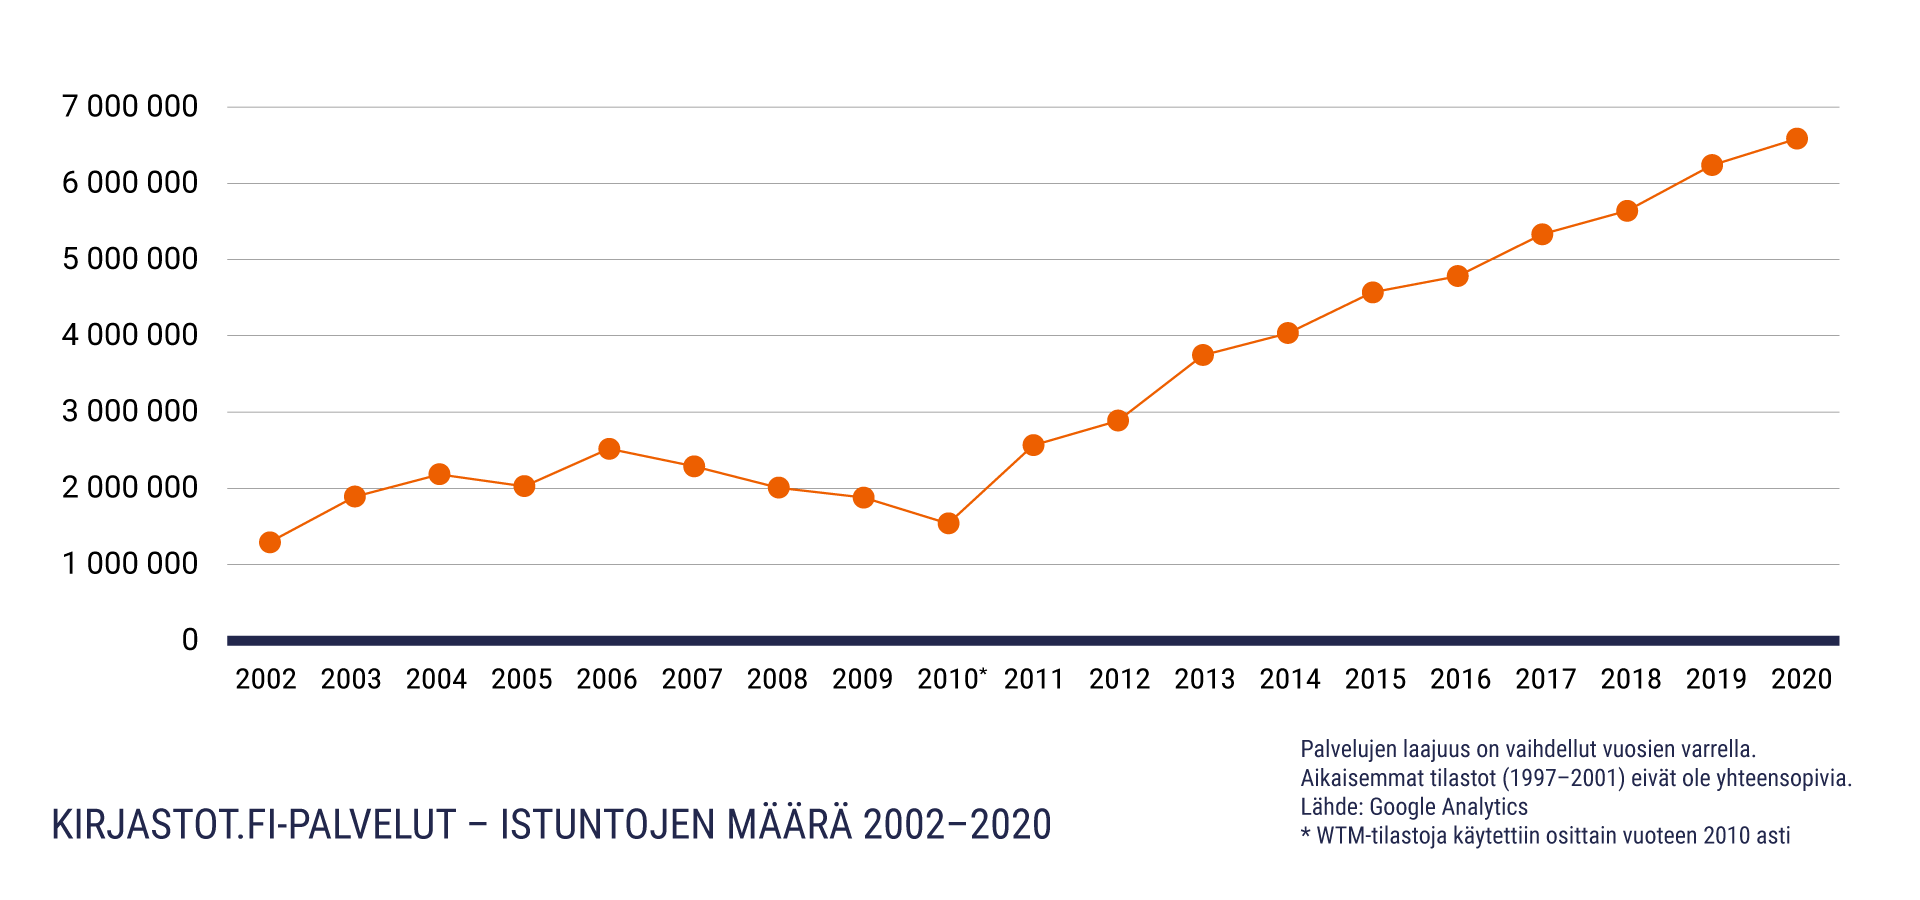 Viivakäyräkaavio, Kirjastot.fi-palvelujen istuntojen määrä 2002-2020. Nousua noin 1,2 miljoonasta 6,2 miljoonaan istuntoon.